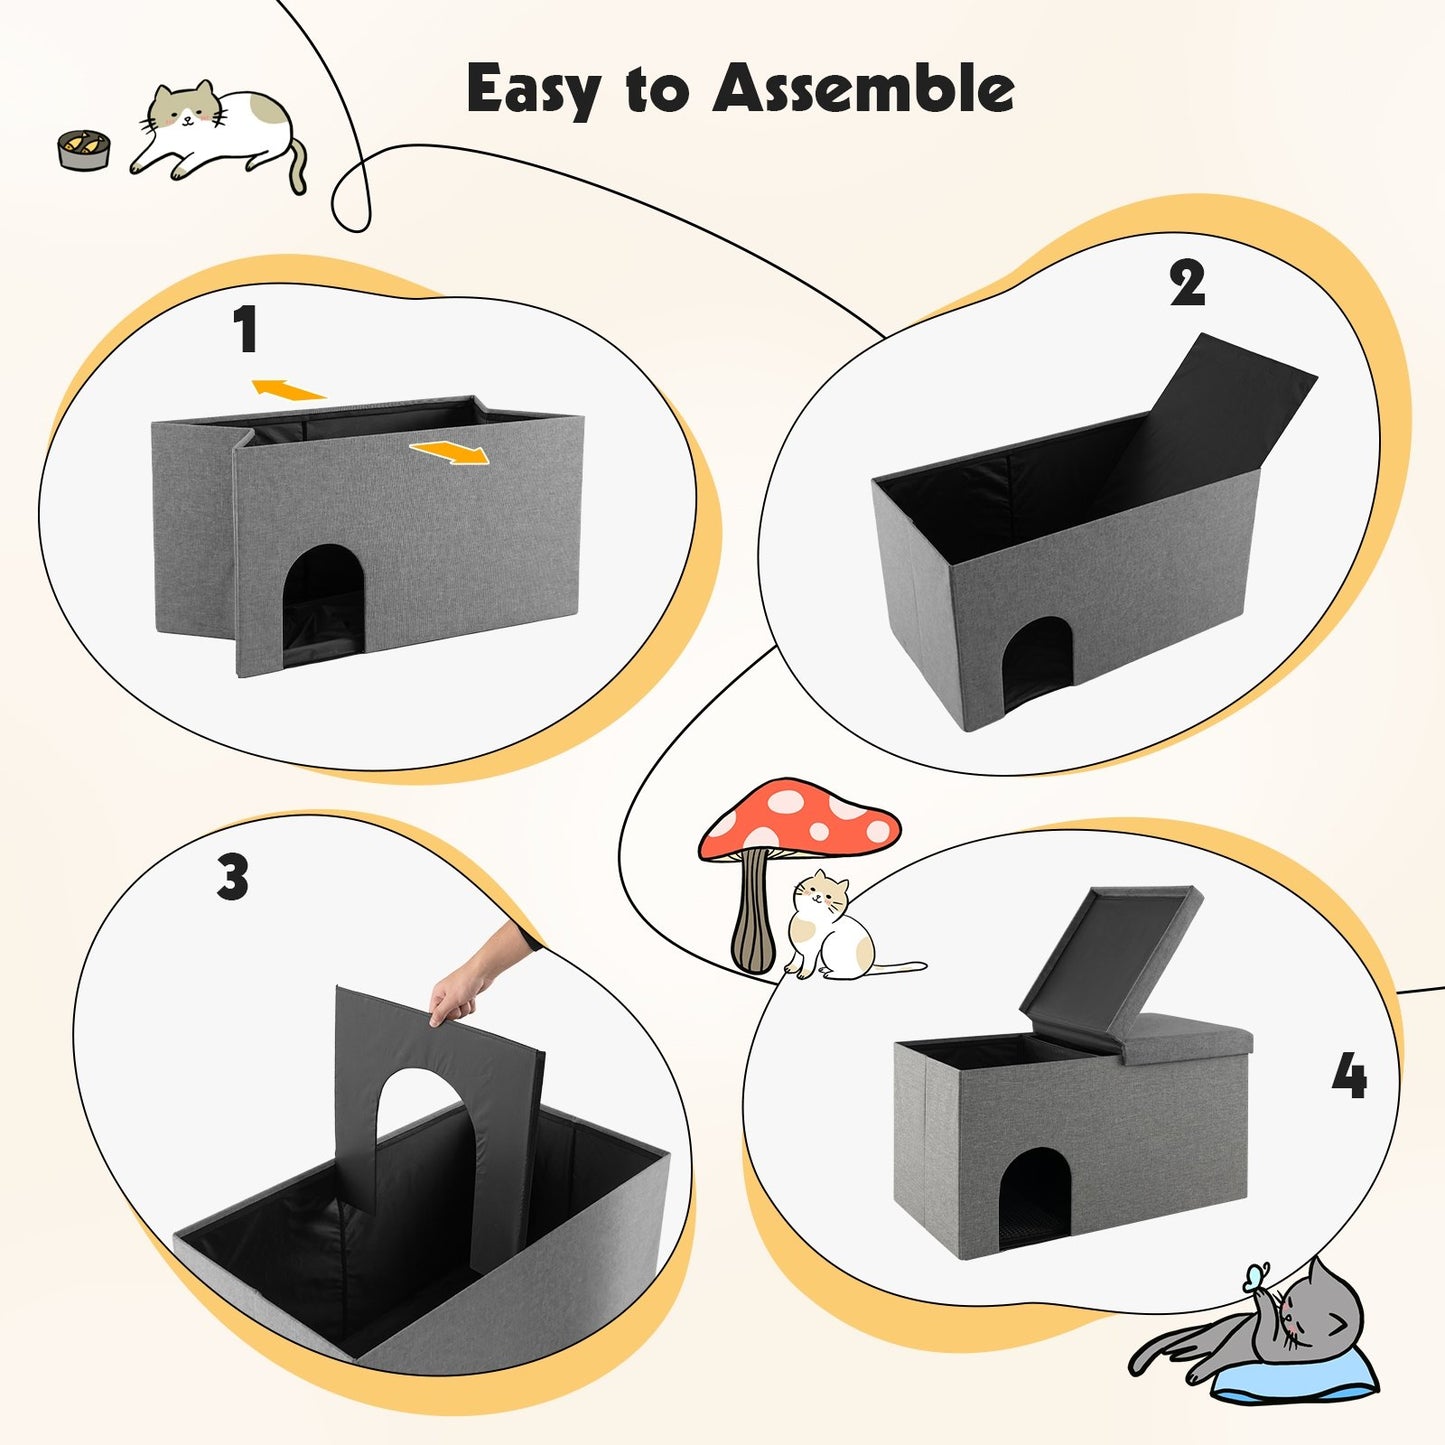 Cat Litter Box Enclosure Hidden Furniture with Urine Proof Litter Mat, Gray